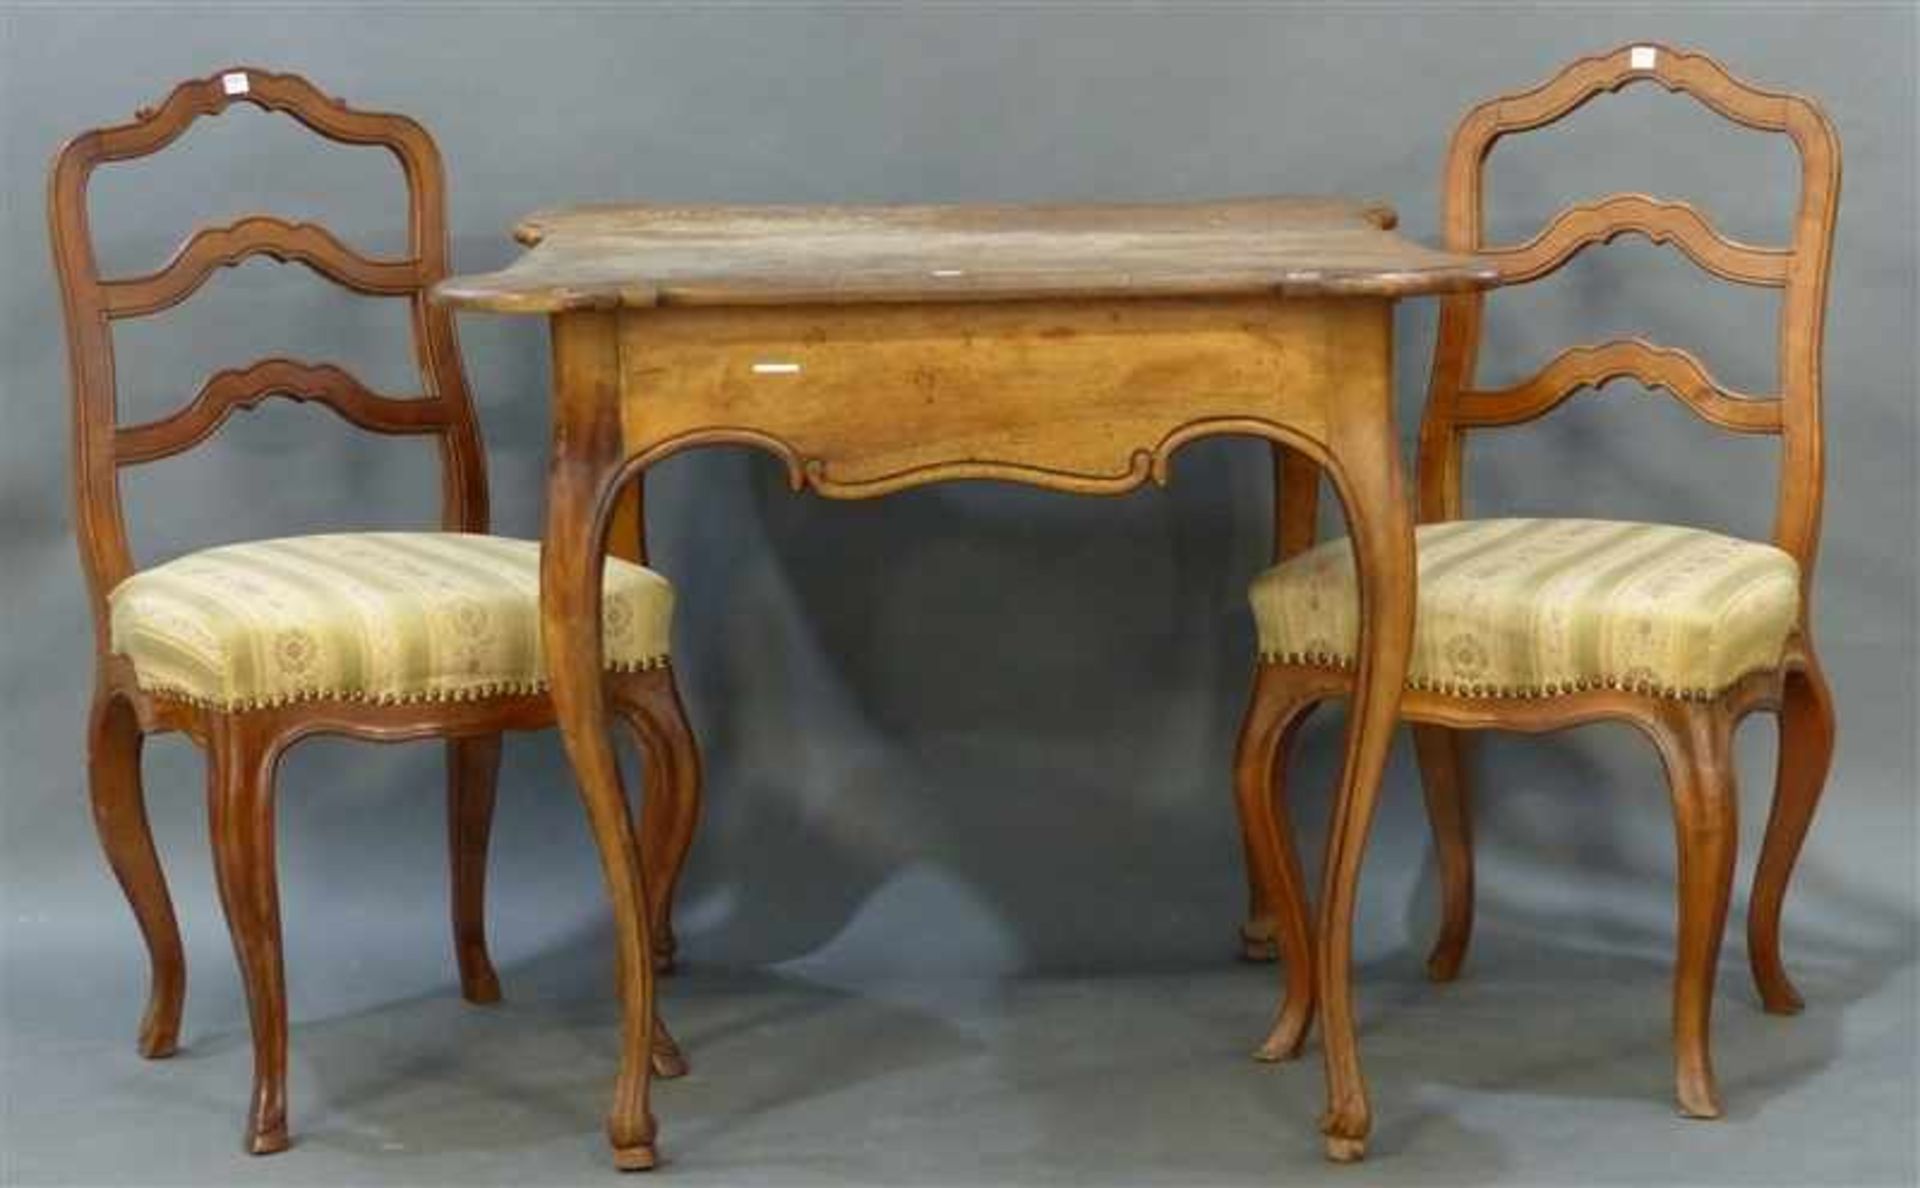 Sitzgarnitur Barock, Tisch mit 2 Stühlen, Nußbaum, gebogte Beine, um 1800, Platte beschädigt,